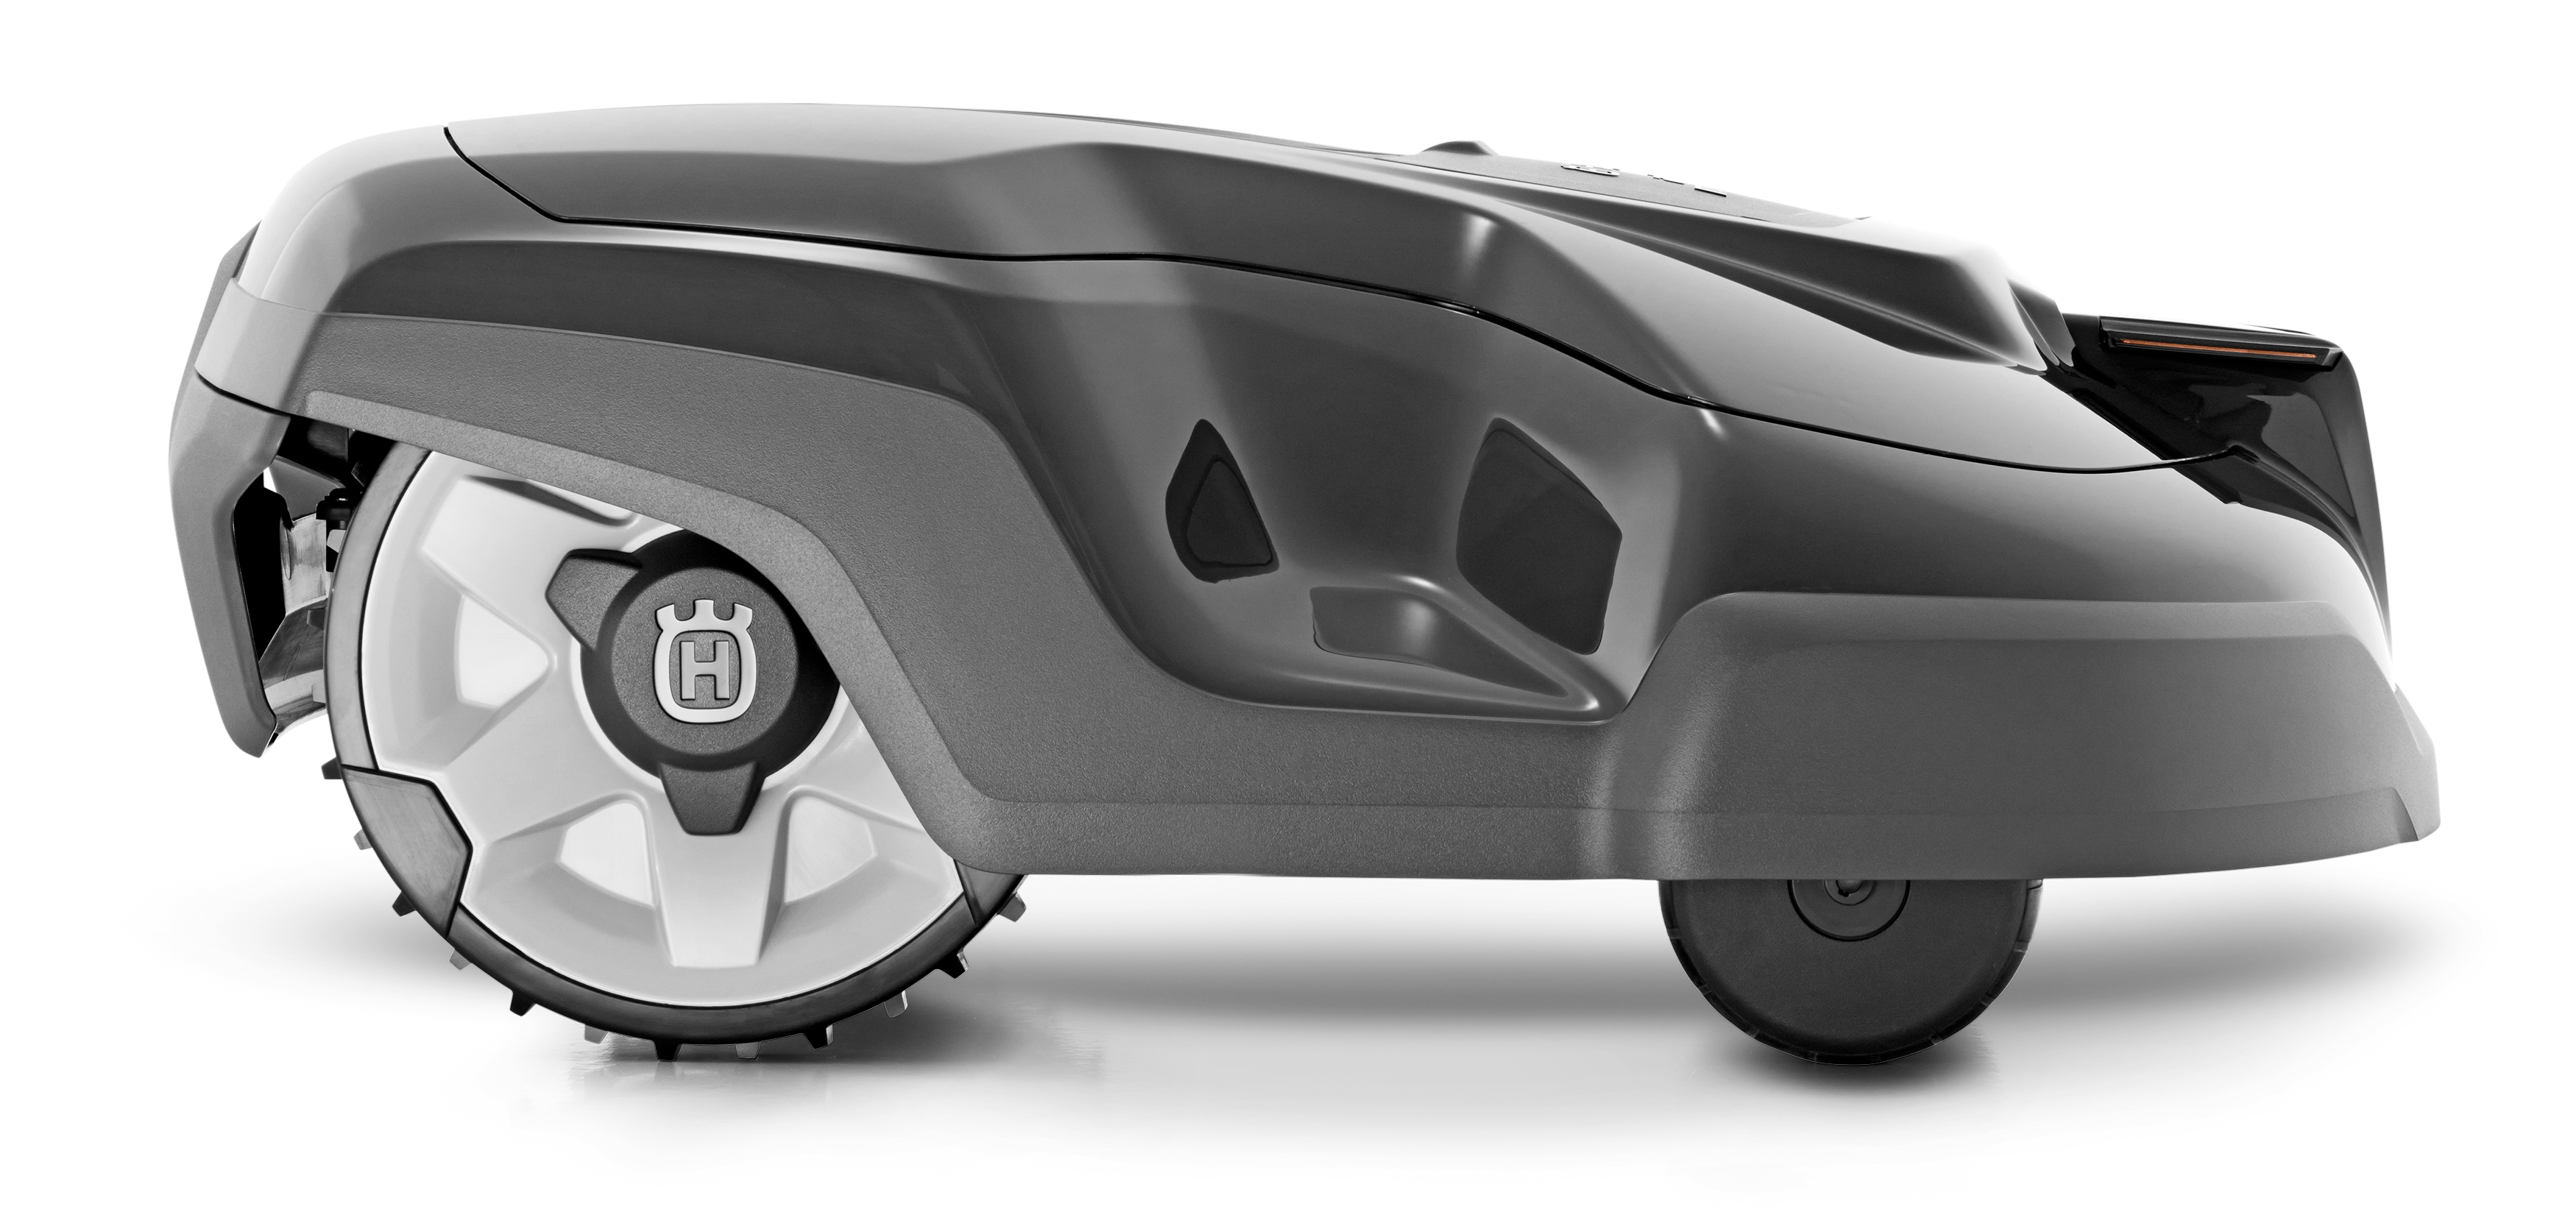 Melns Husqvarna zāles pļāvējs robots – Automower 310 modelis, skats no labā sāna